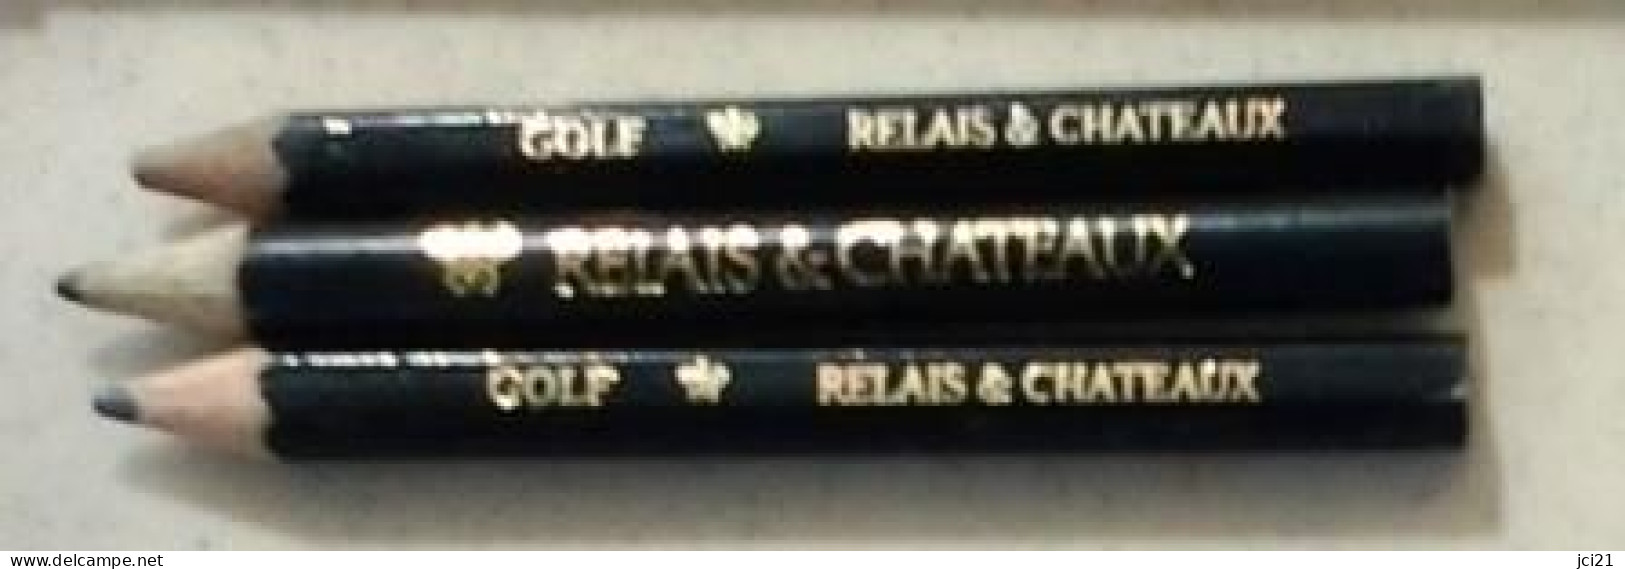 Lot De 3 Crayons " RELAIS & CHATEAUX Et GOLF RELAIS & CHATEAUX " (Bte Stylo) _Di397 - Schrijfgerief